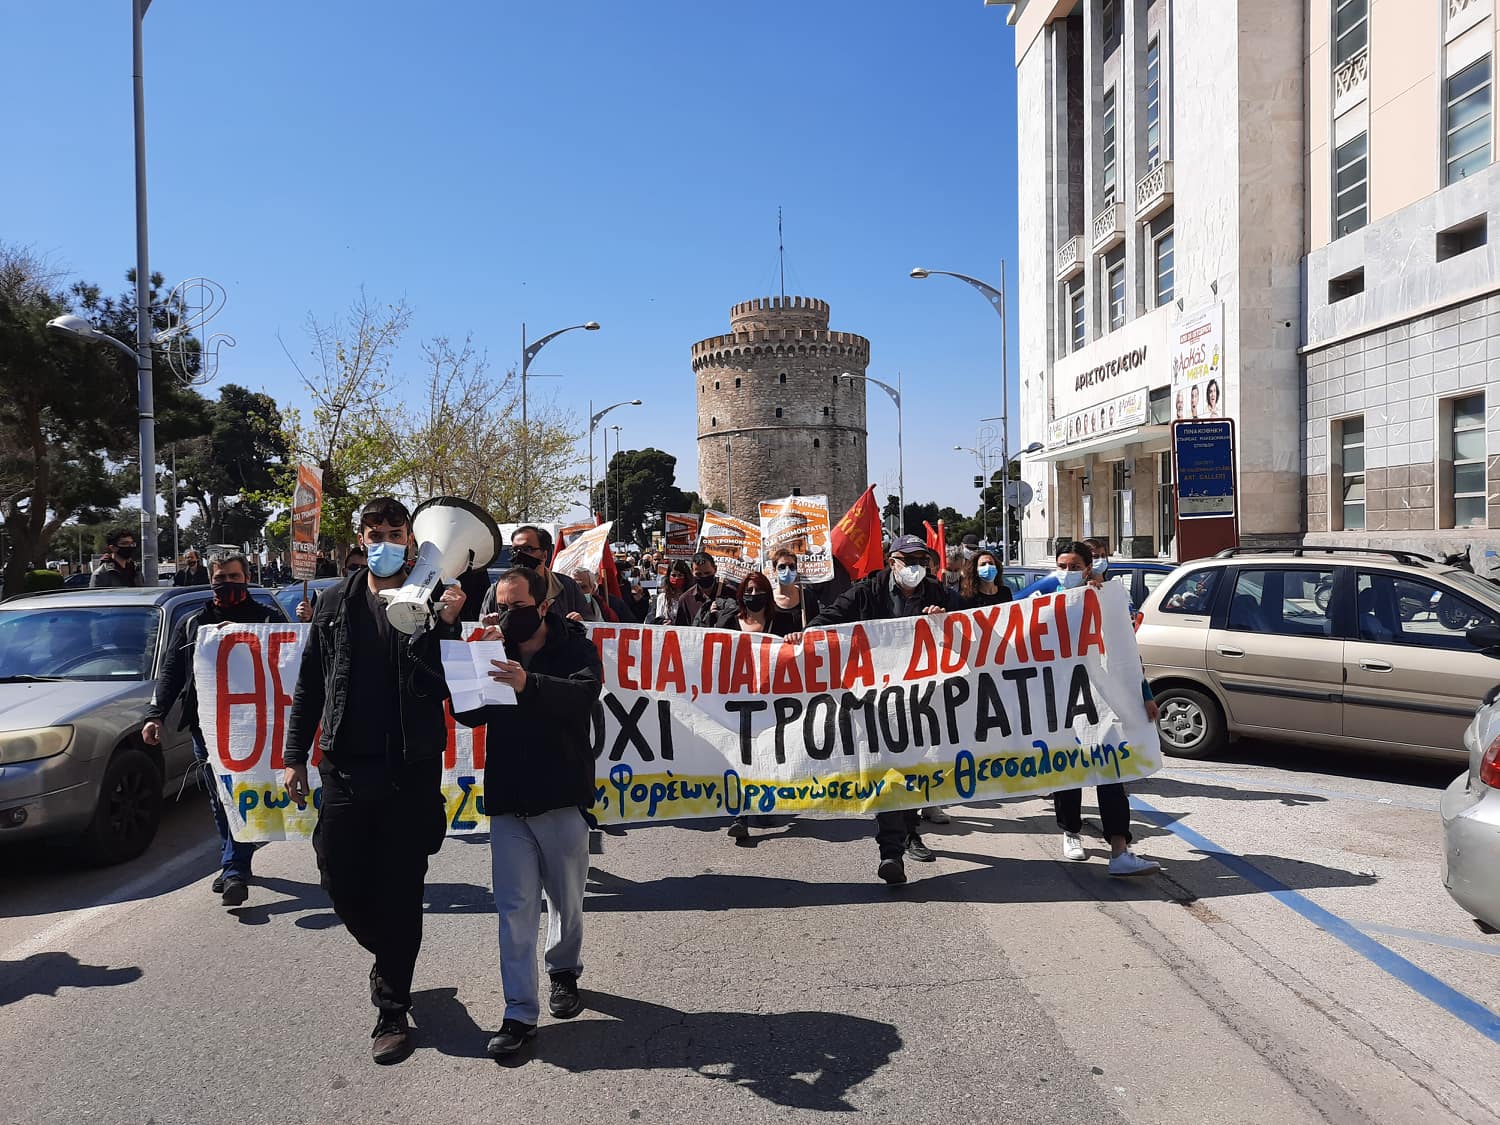 Πορεία διαμαρτυρίας στη Θεσσαλονίκη  για την κρατική καταστολή και τις αστικές συγκοινωνίες